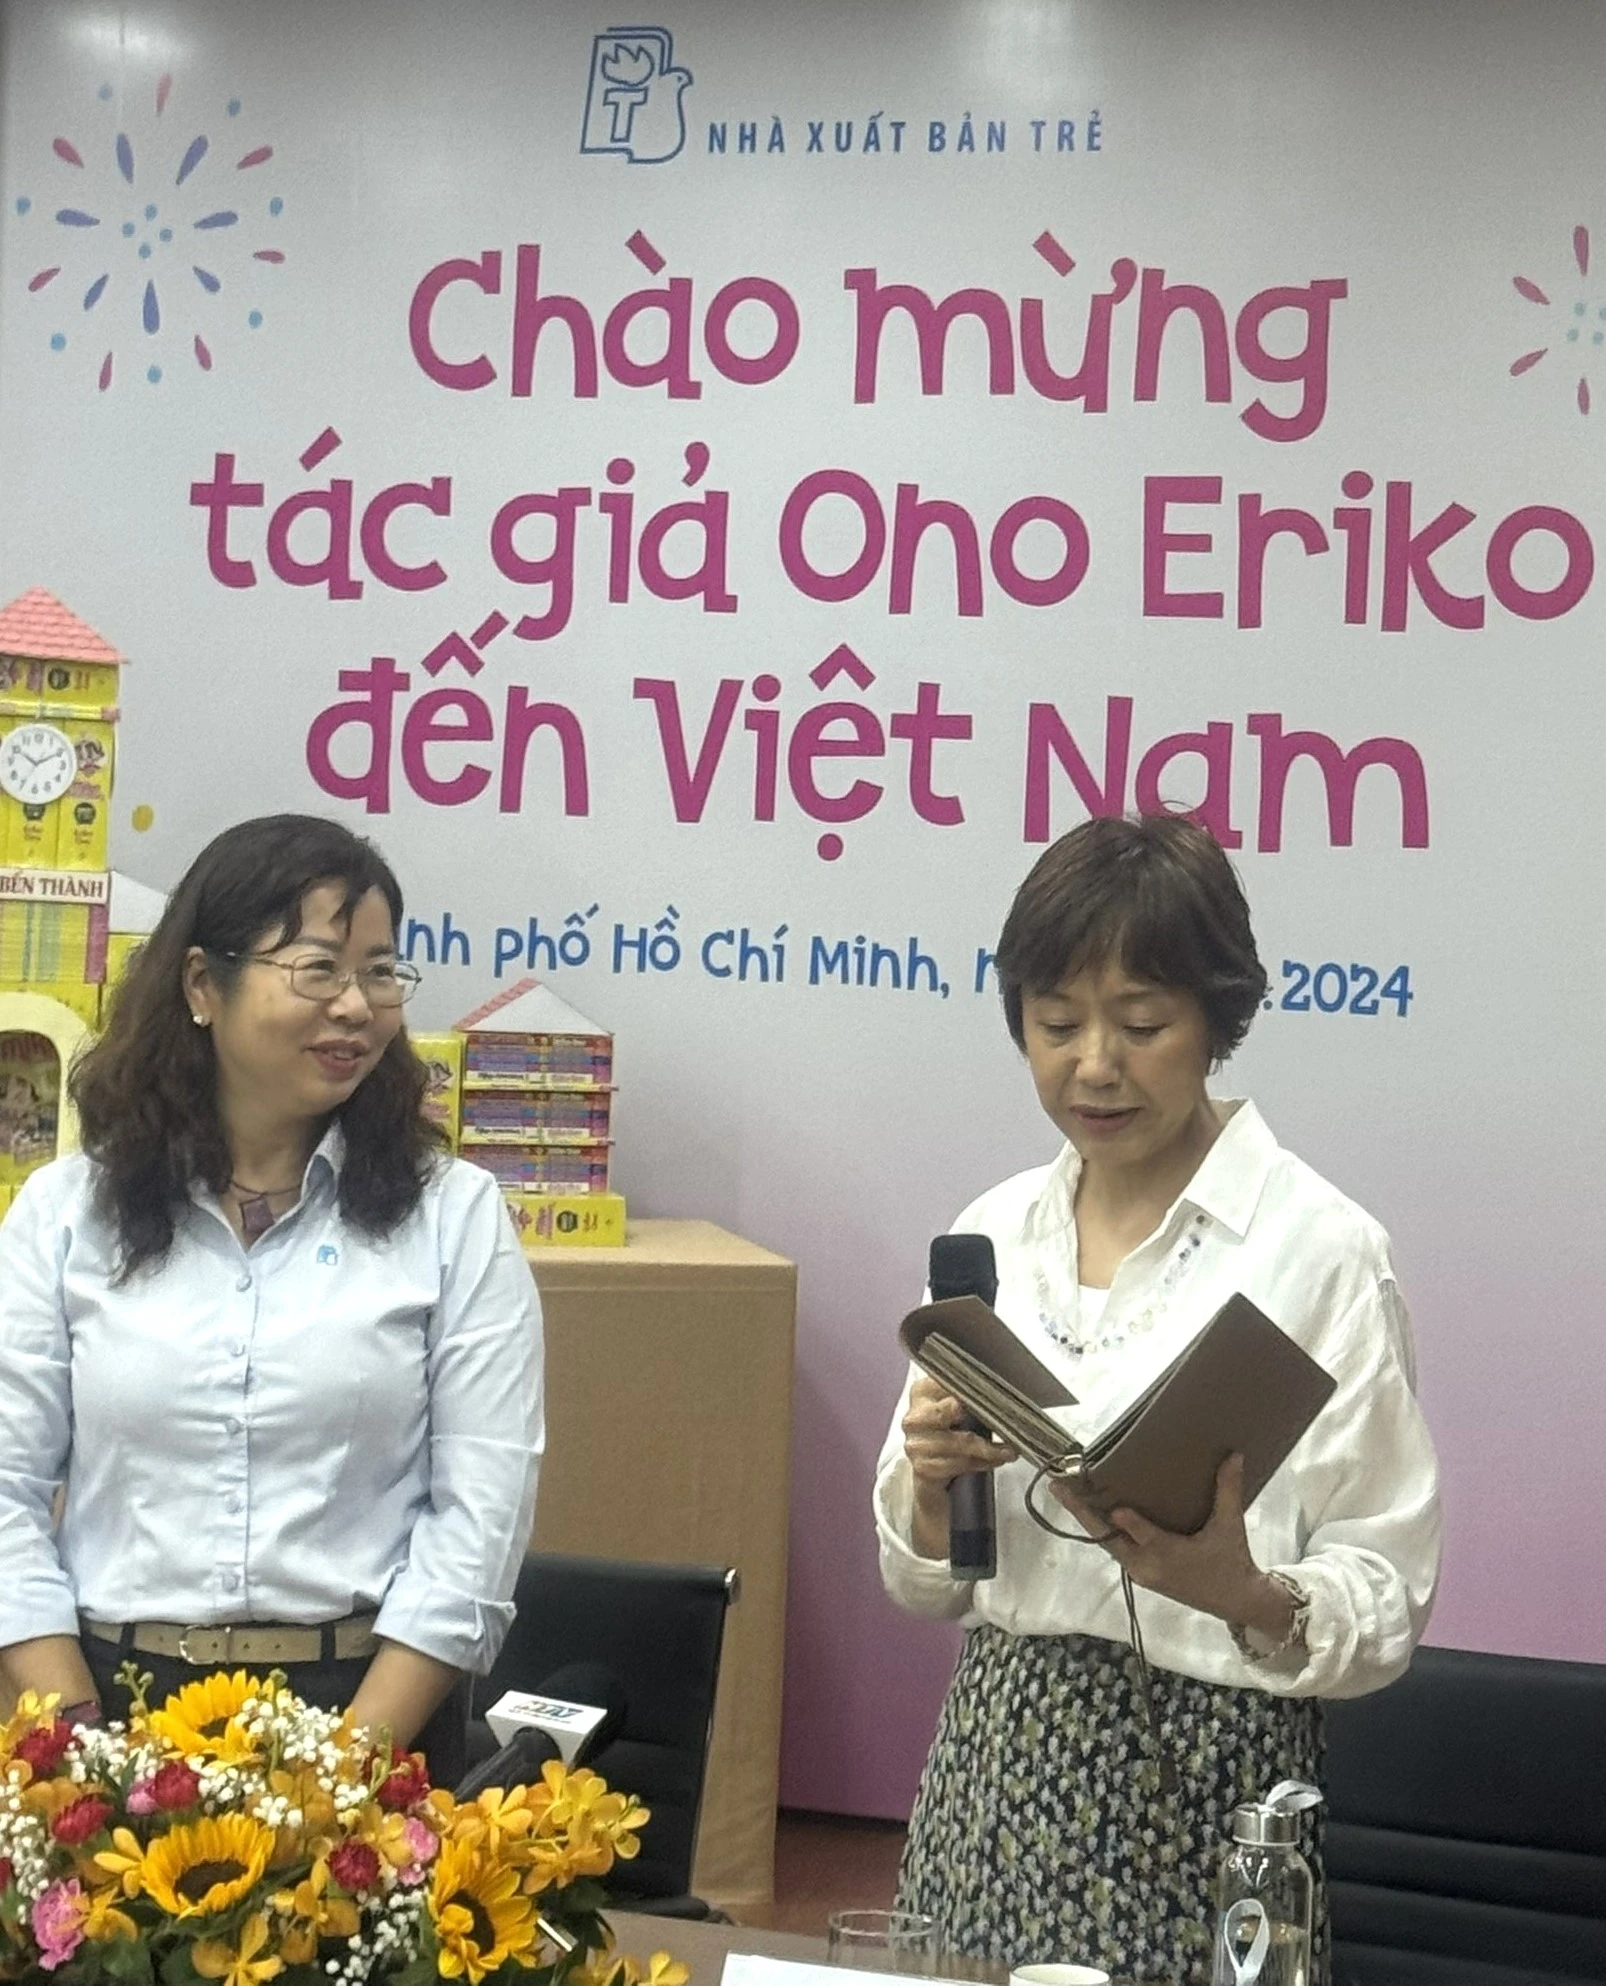 Tác giả bestseller manga Nhật Bản Ono Eriko bất ngờ khi thử món ngon Việt Nam